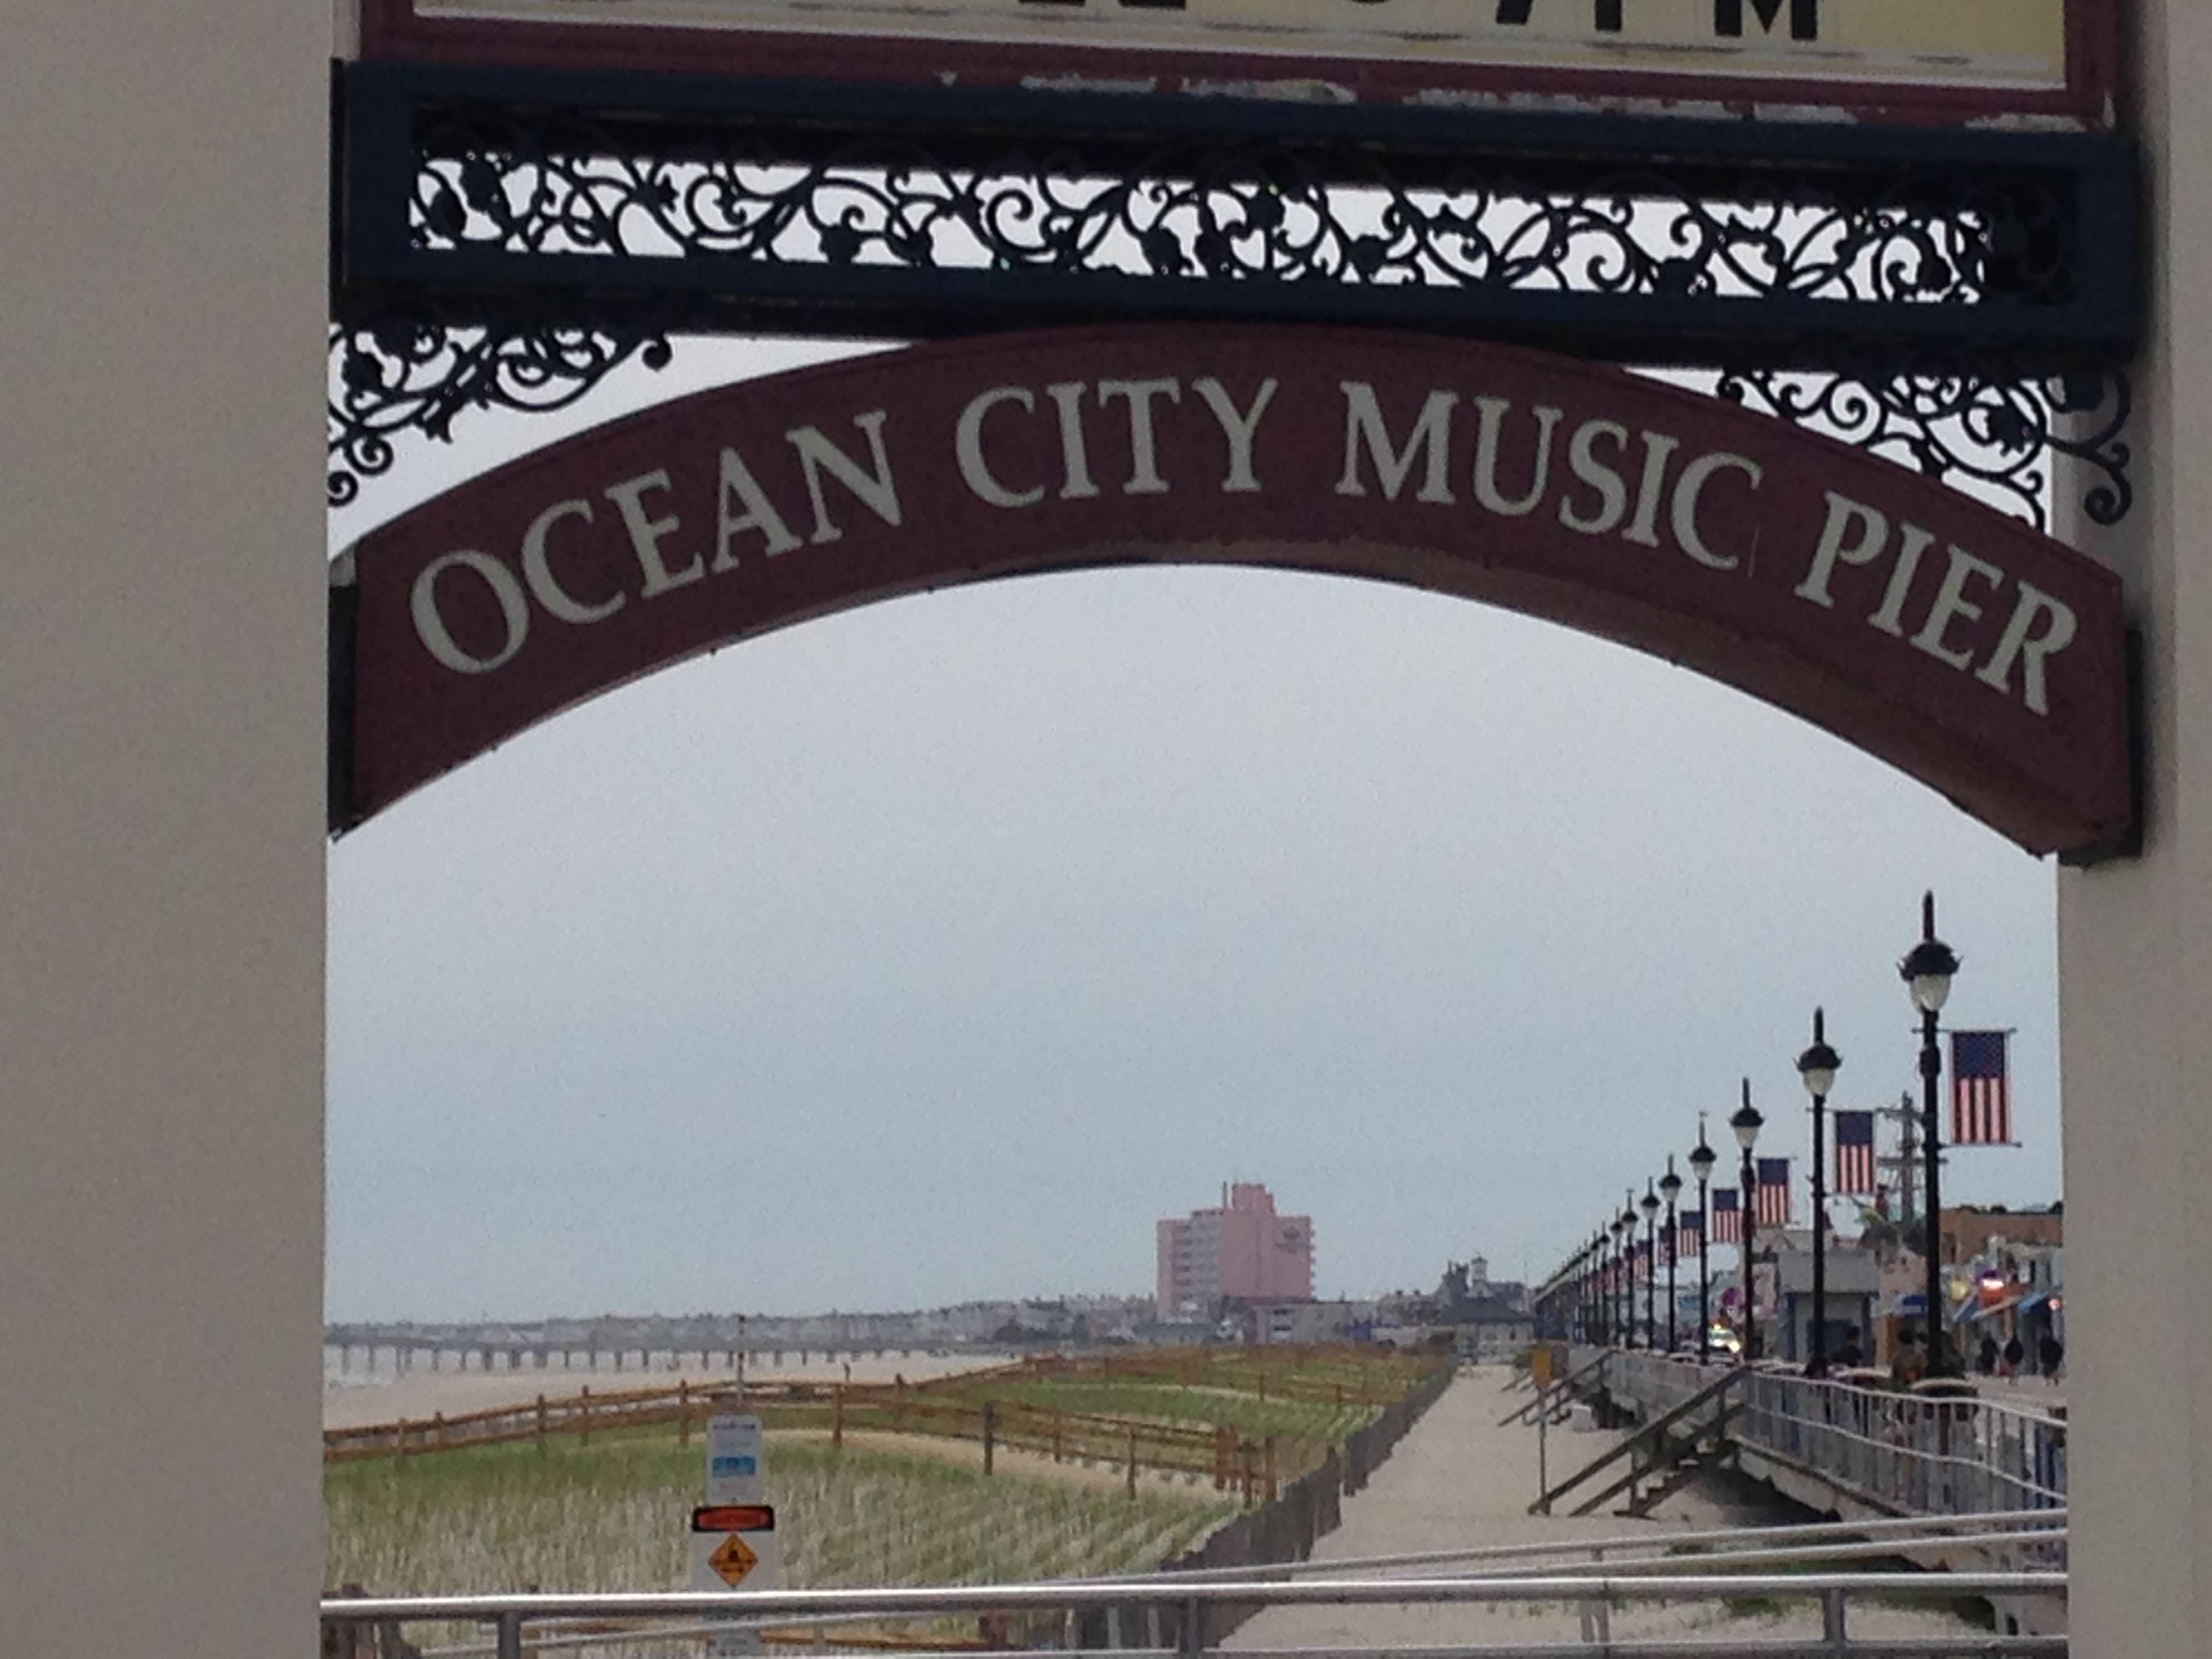 Ocean City Music Pier (Credit: Andrew Kramer)